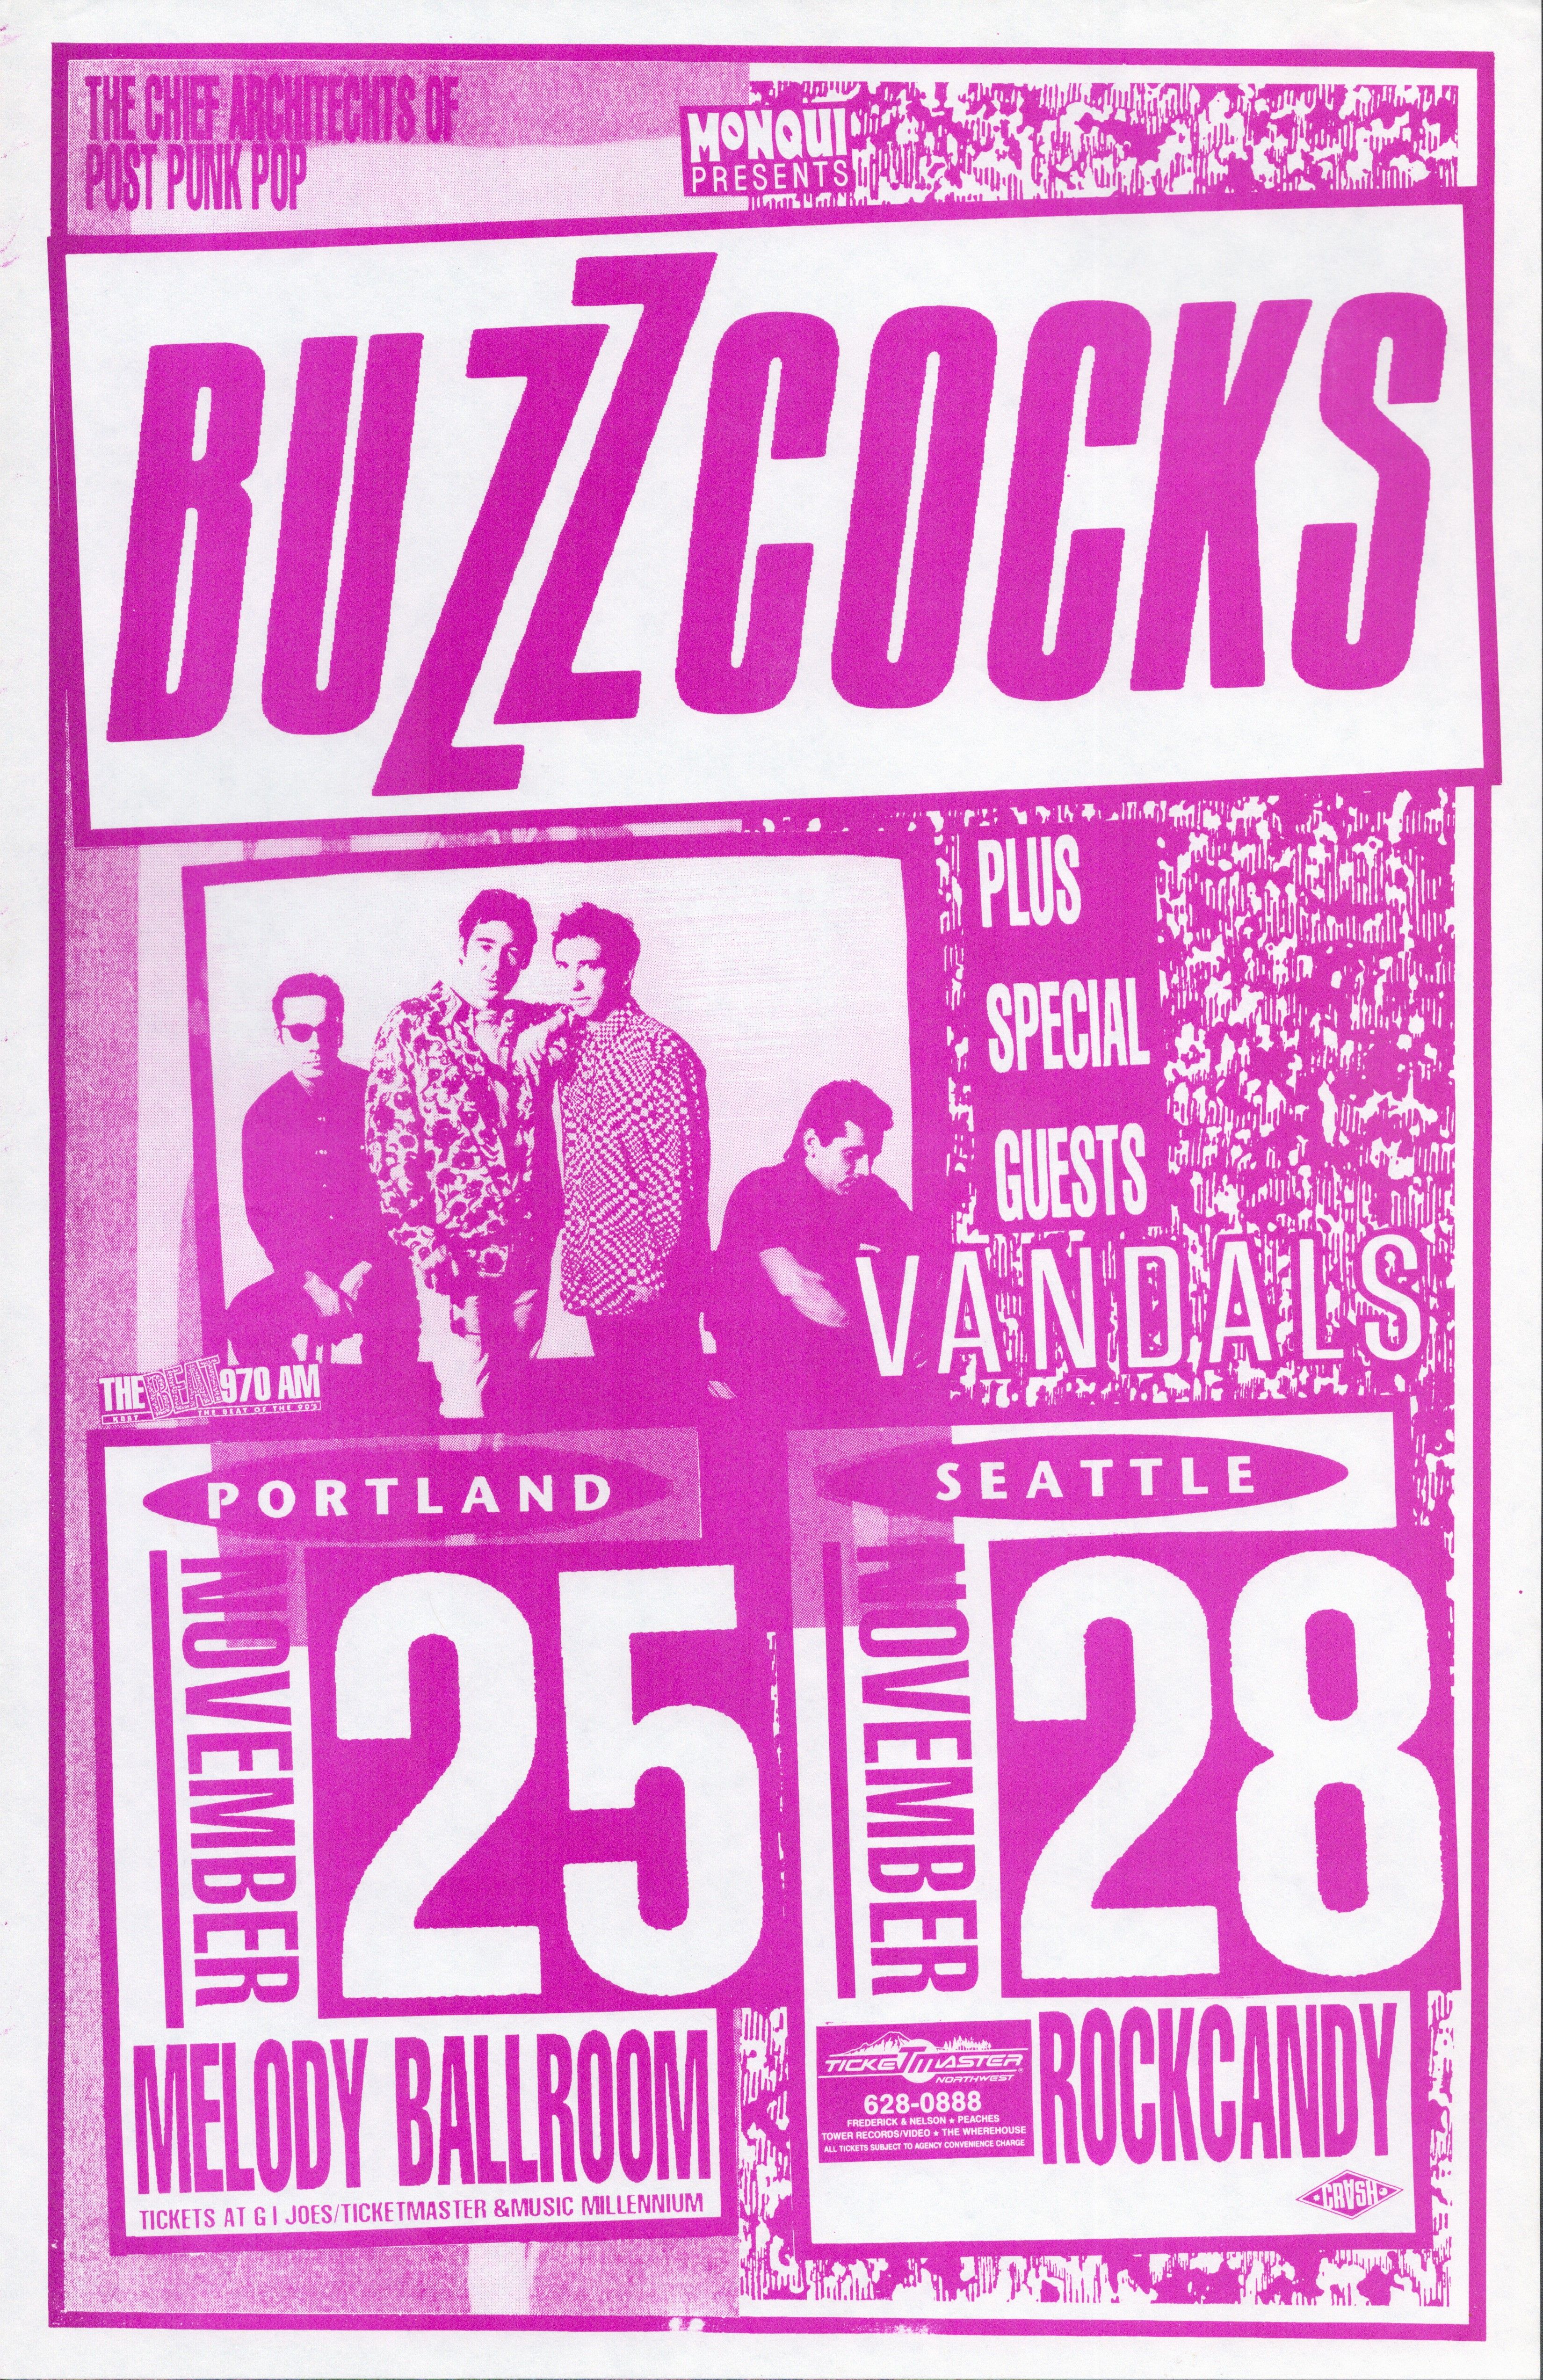 MXP-53.3 Buzzcocks Melody Ballroom & Rockcandy 1992 Concert Poster